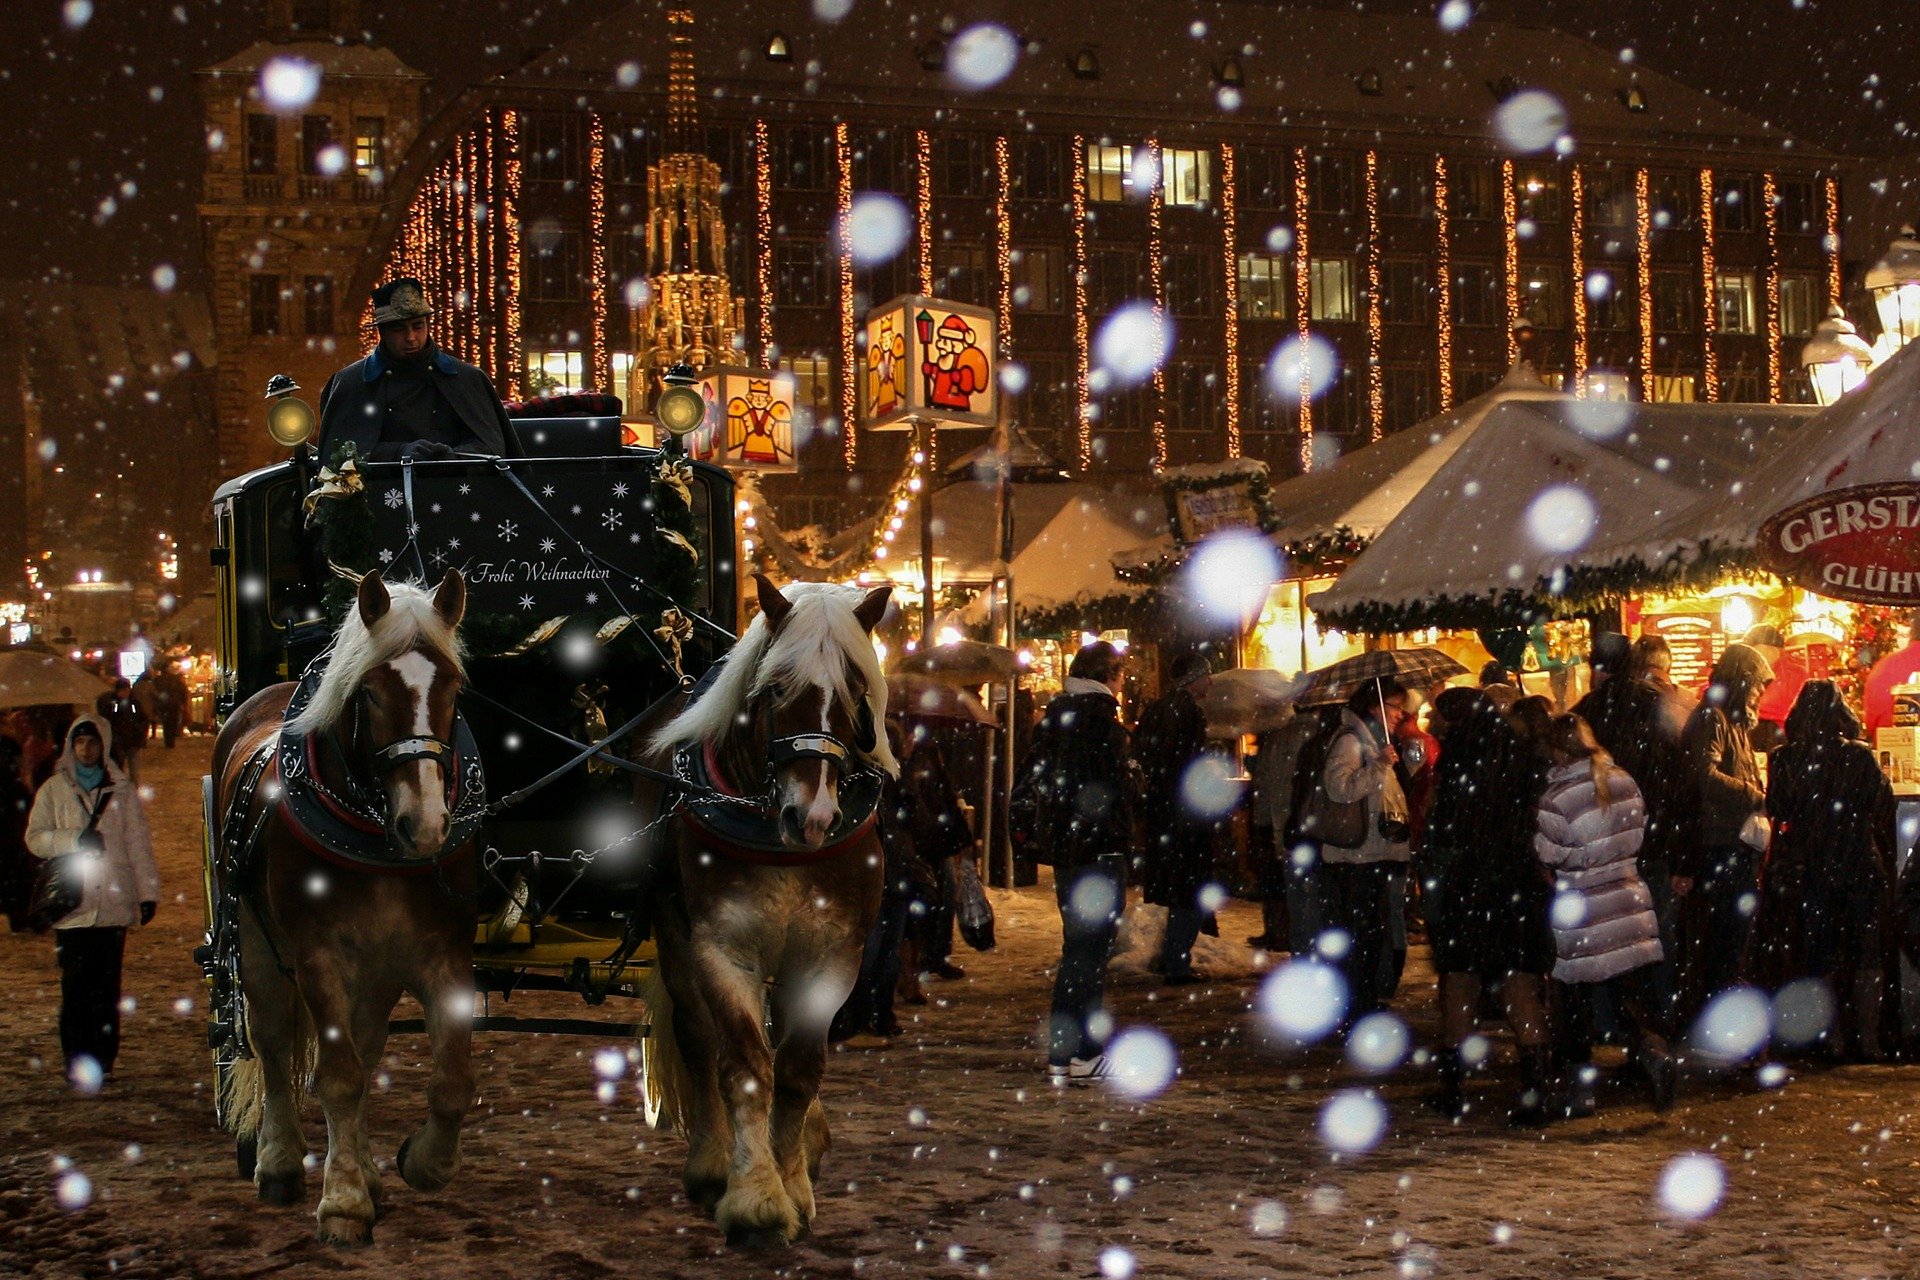 The best Berlin Christmas markets